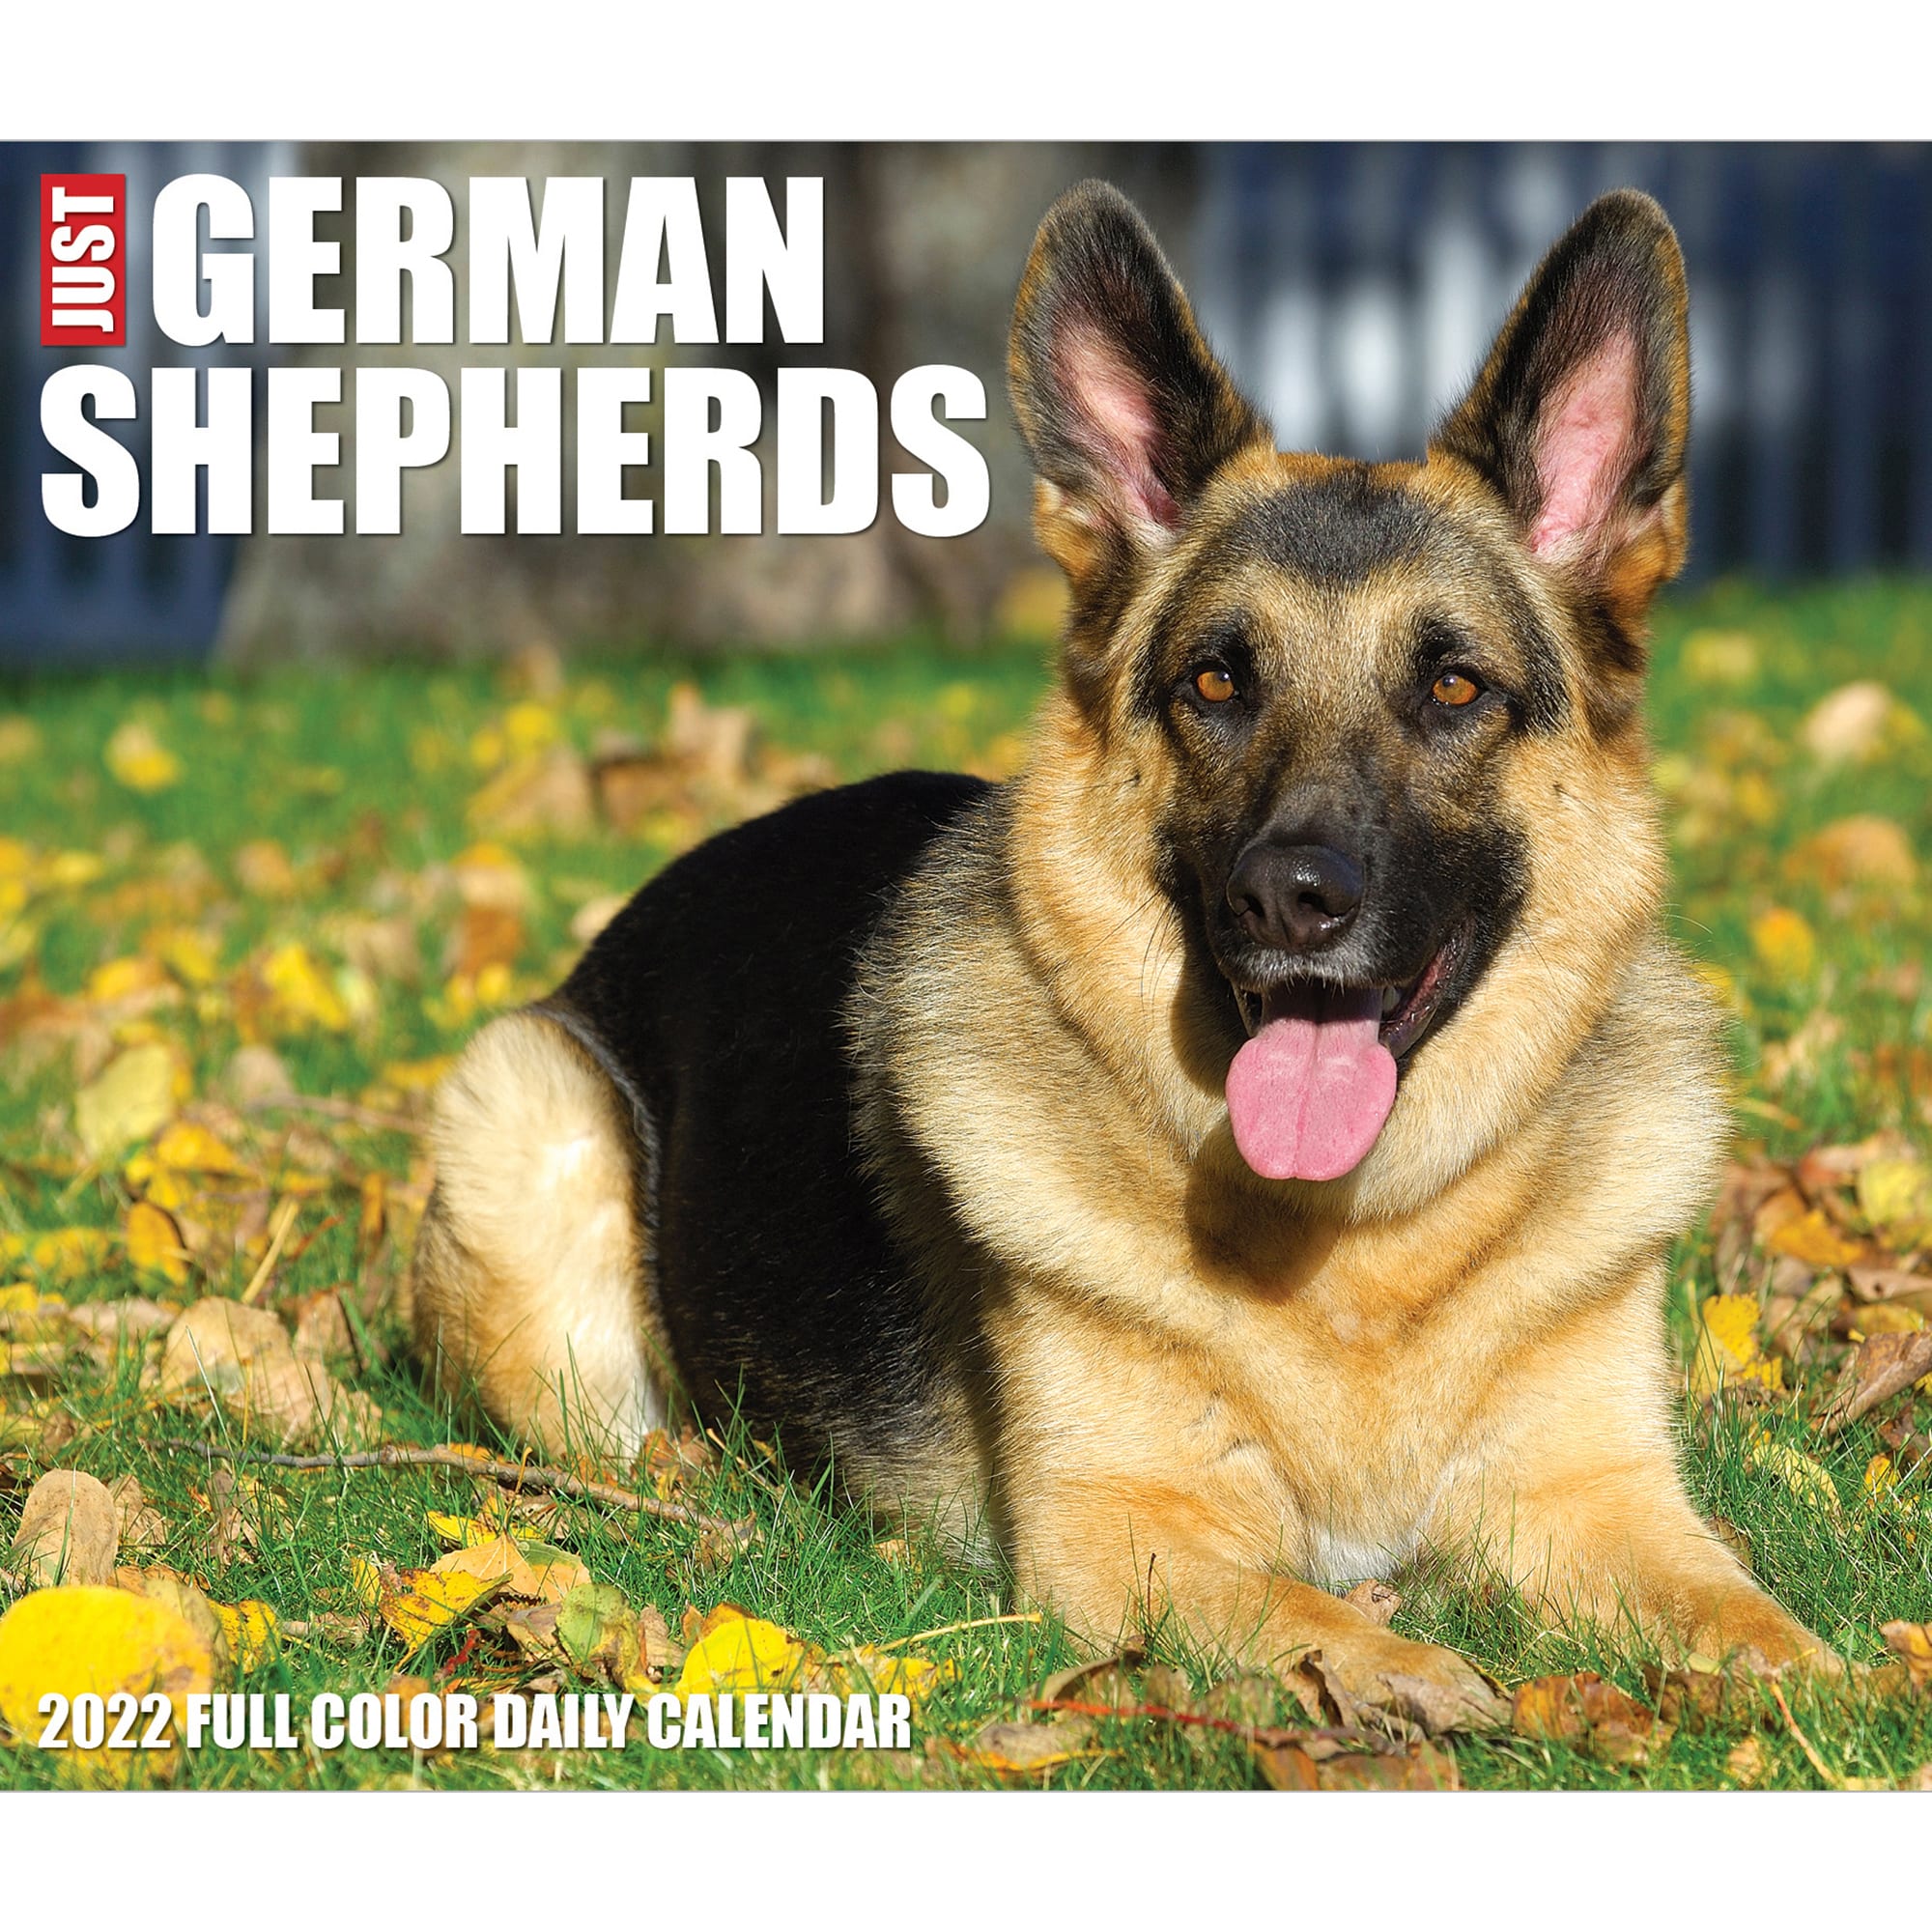 Gsd Calendar 2022 Willow Creek Press German Shepherds 2022 Box Calendar | Petco